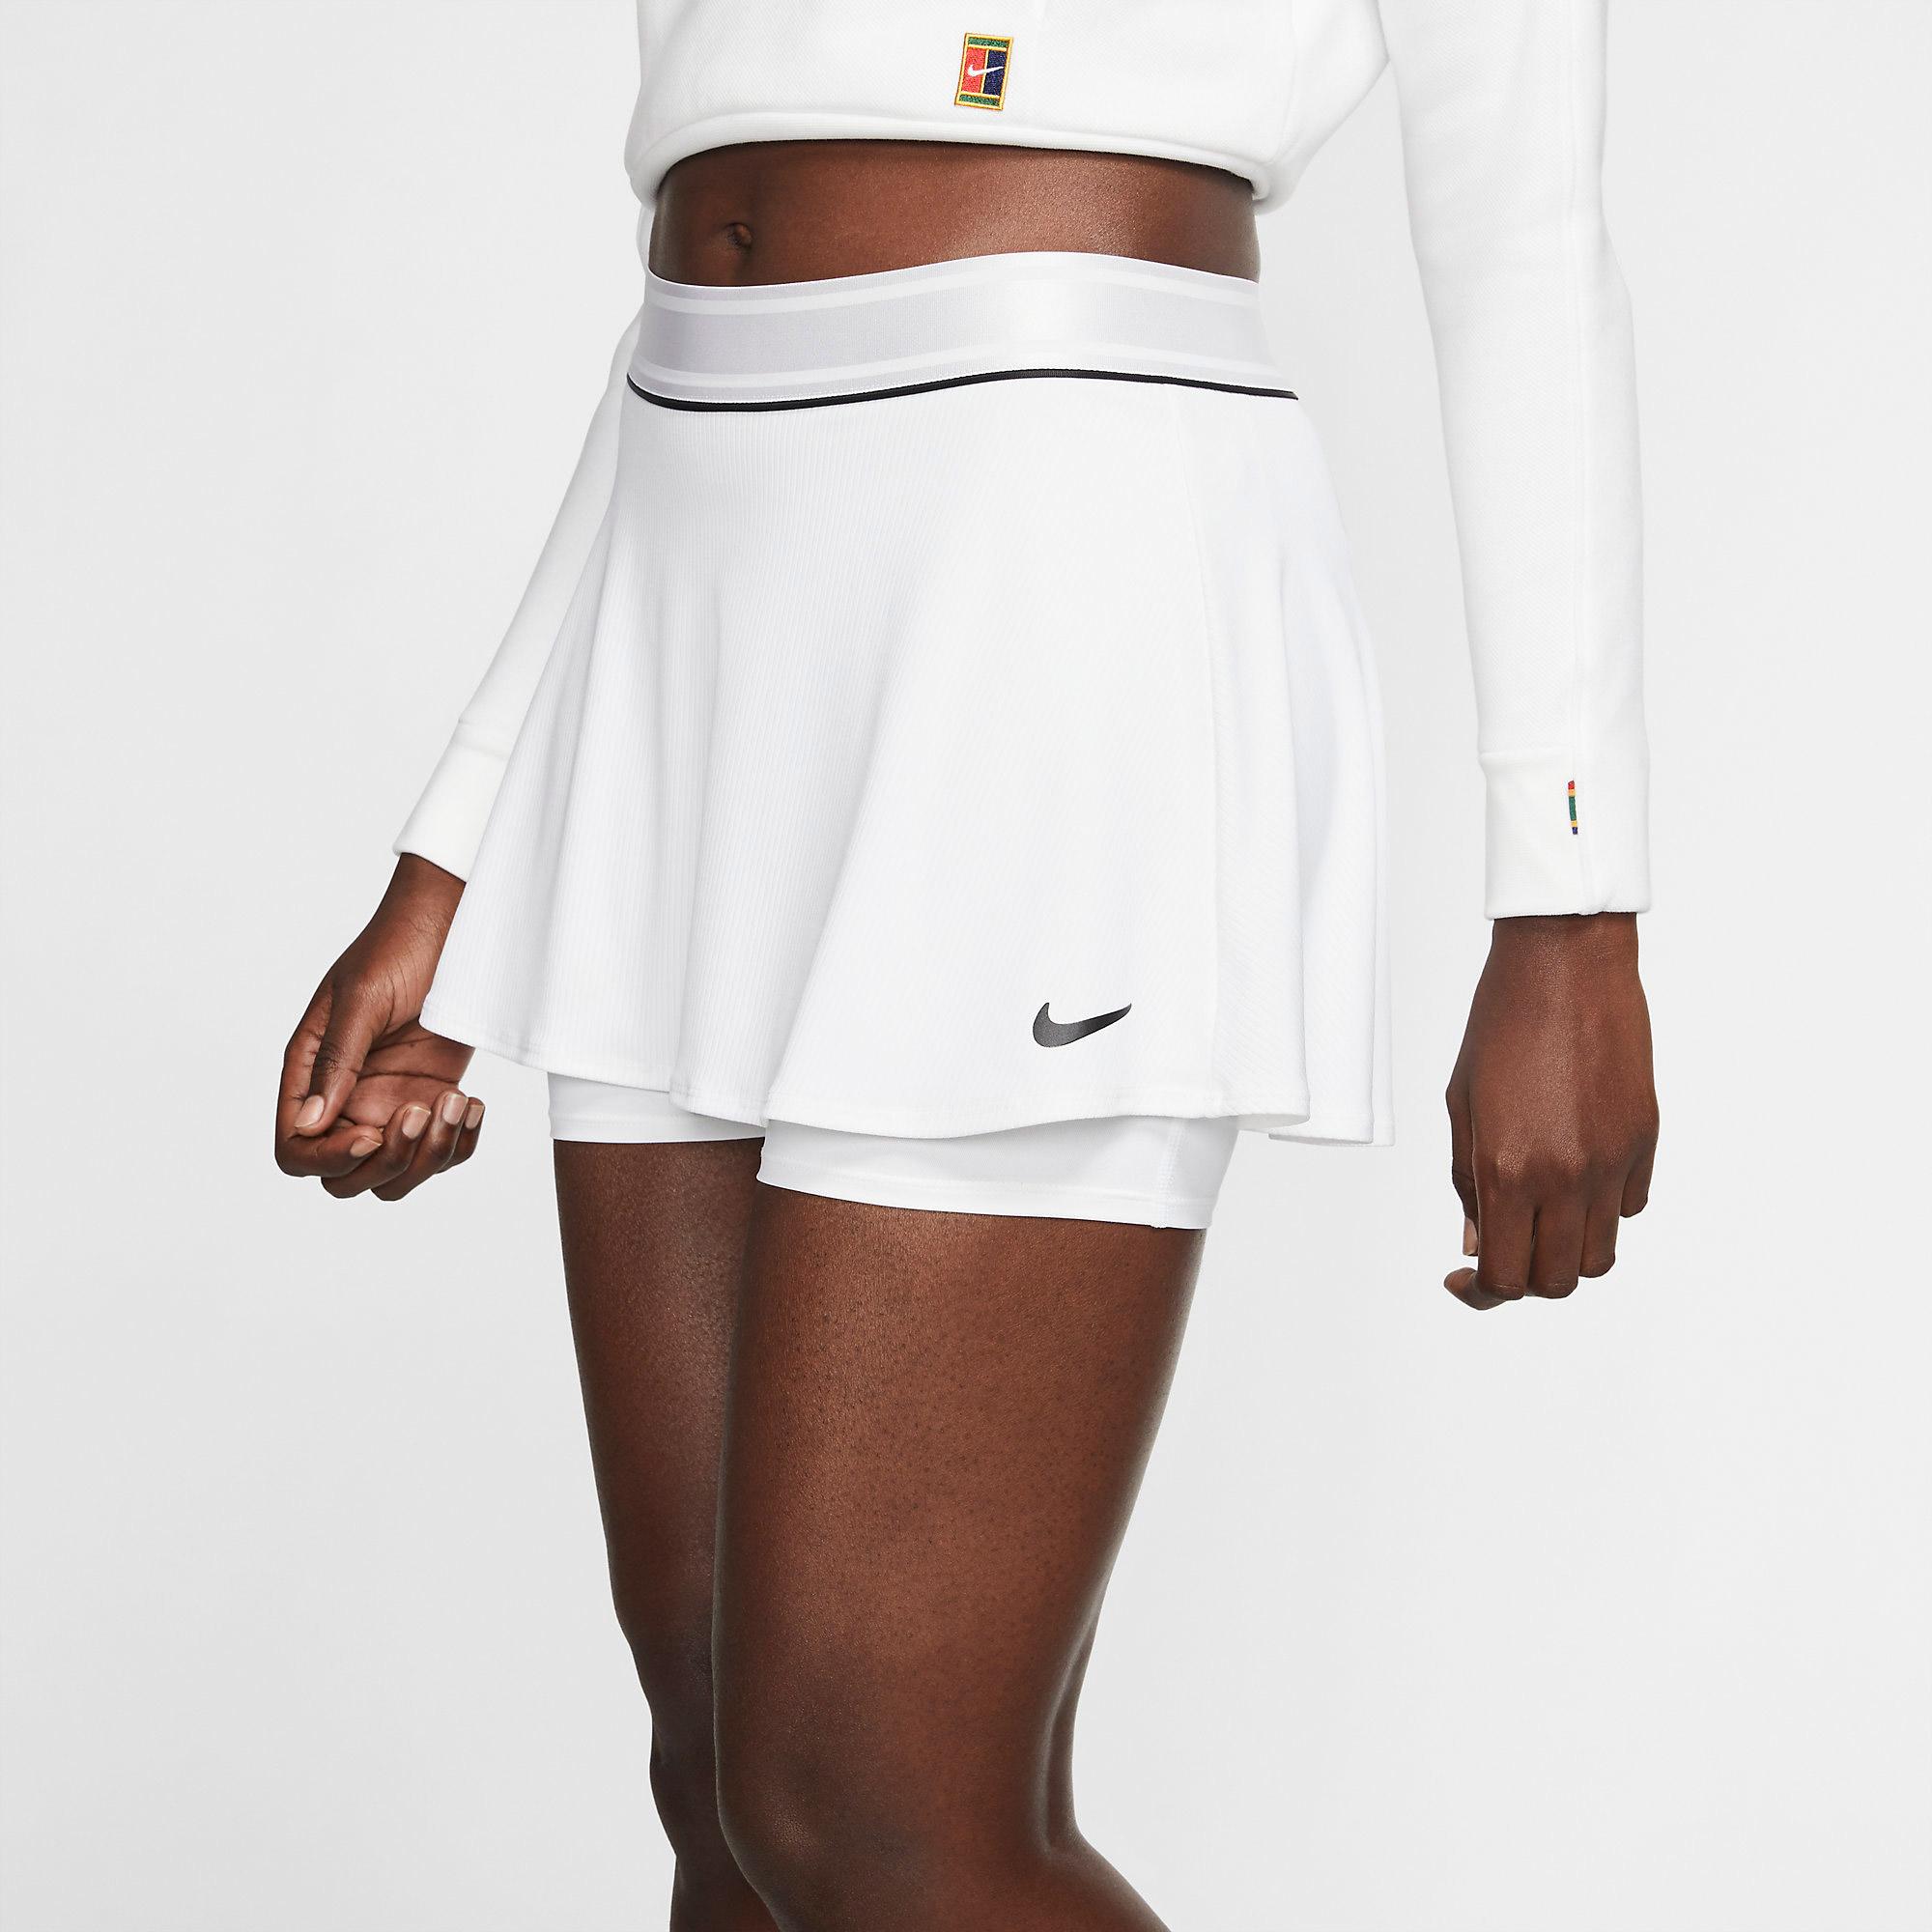 Nike Womens Dry Tennis Skirt - White - Tennisnuts.com